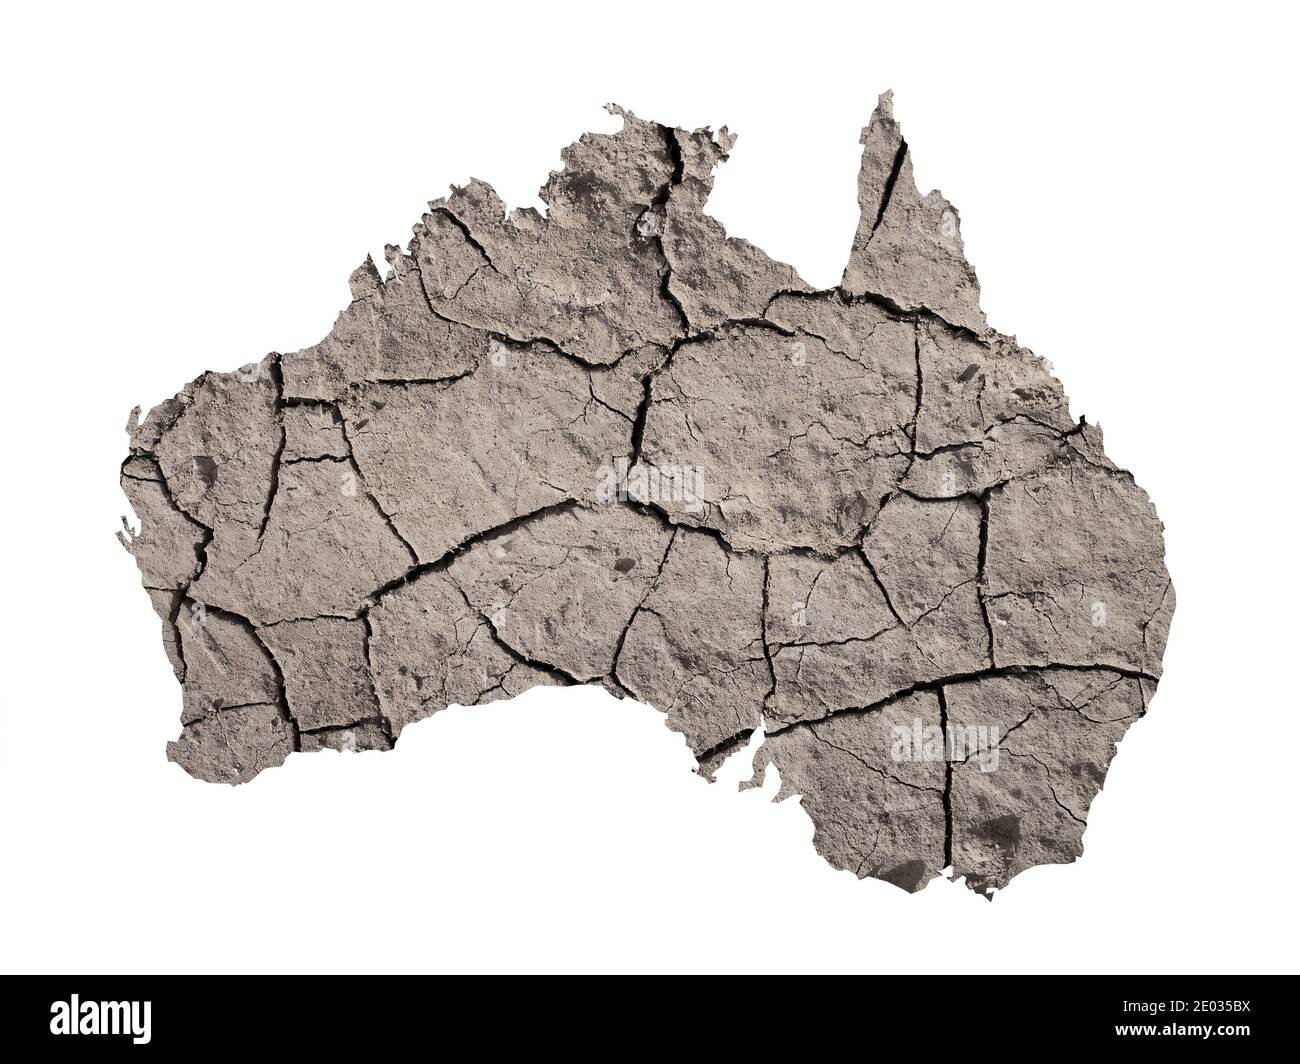 Silhouette dell'Australia. La mappa è realizzata con l'immagine di terra asciutta. Metafora di cambiamenti climatici catastrofici nella zona - siccità, dryland, desertificatio Foto Stock